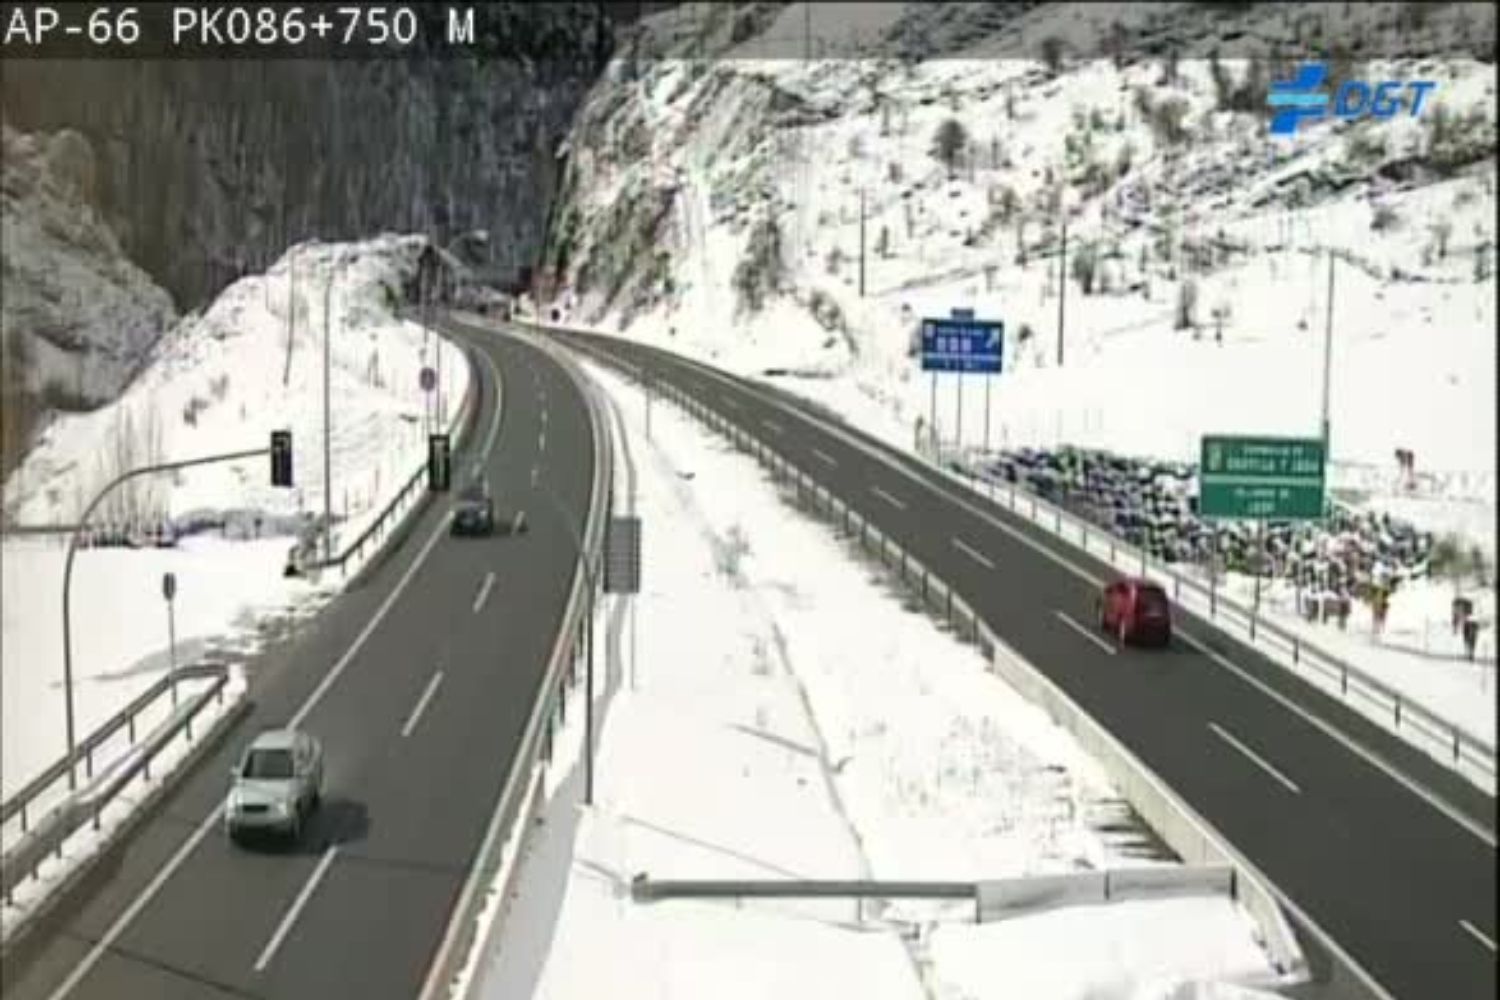 La nieve obliga a tomar precauciones en las conexiones entre León y Asturias, mientras que la LE-126, a la altura de La Baña, está totalmente restringida al tráfico